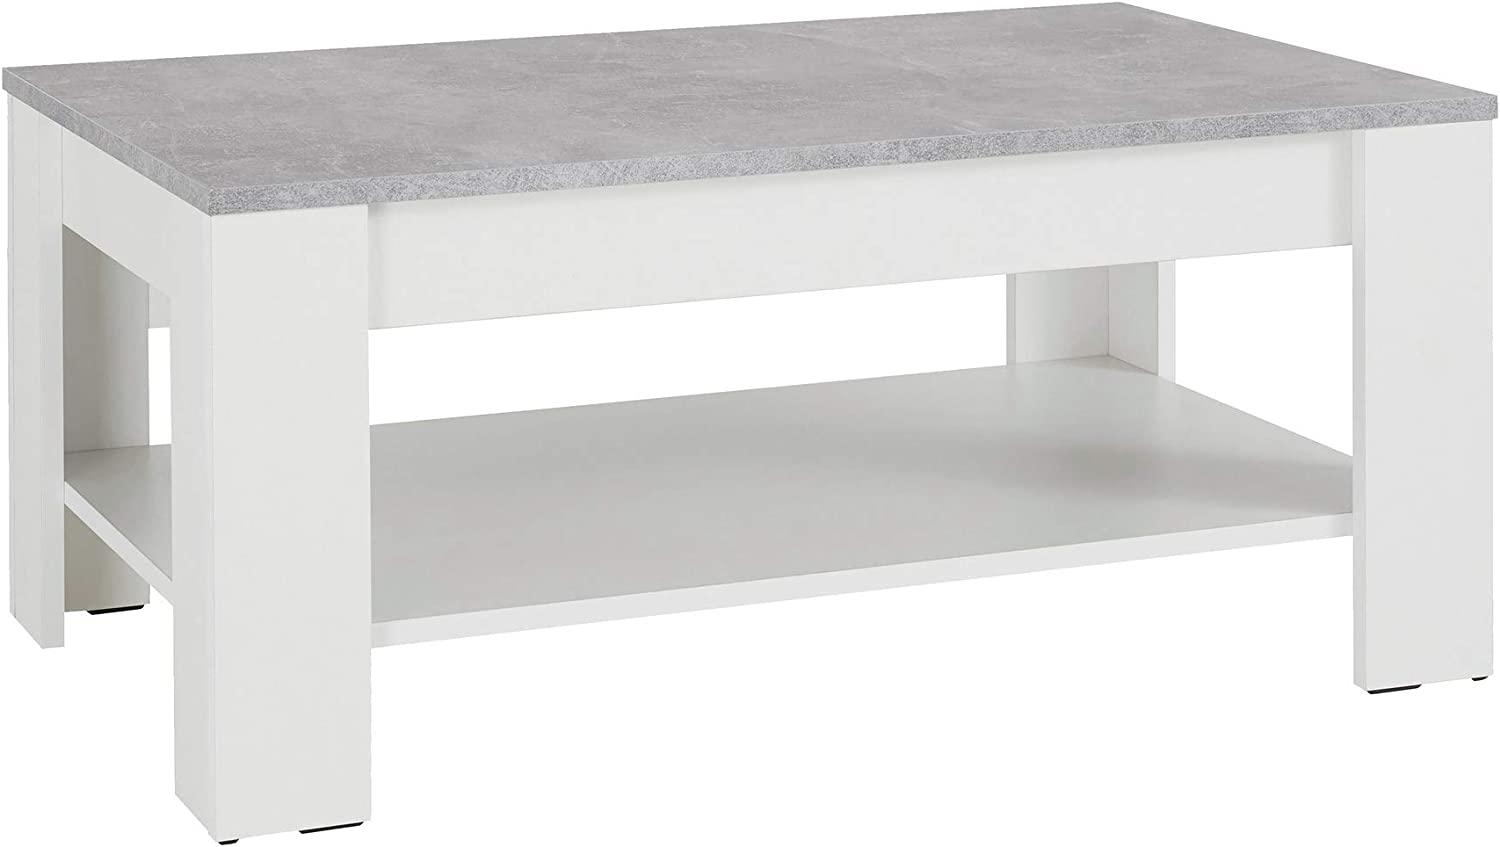 byLIVING Couchtisch ZAGREB / Moderner Wohnzimmertisch in weiß, Beton-Optik / Mit einem Ablageboden für viel Stauraum / Komfortable Tischhöhe / B 100, H 44, T 60 cm Bild 1